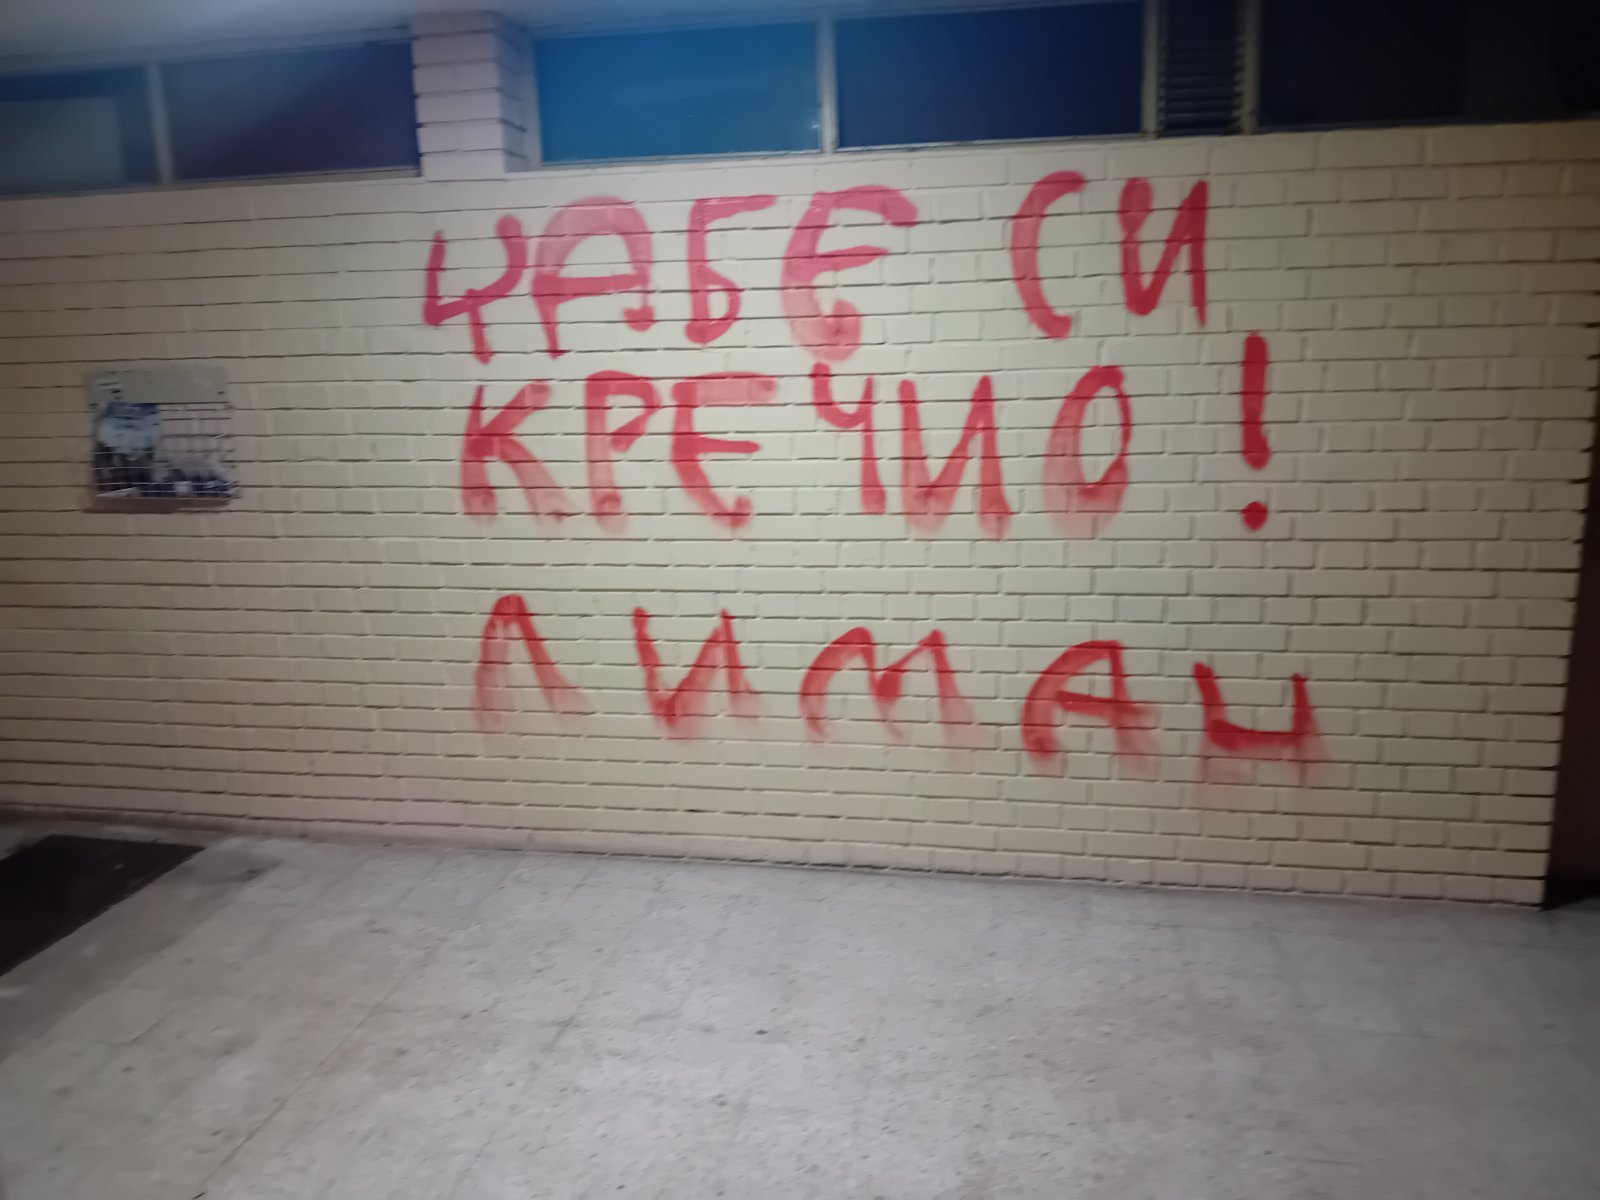 "Džabe si krečio": Ponovo ispisan grafit na ulazu u Gruhonjićevu zgradu